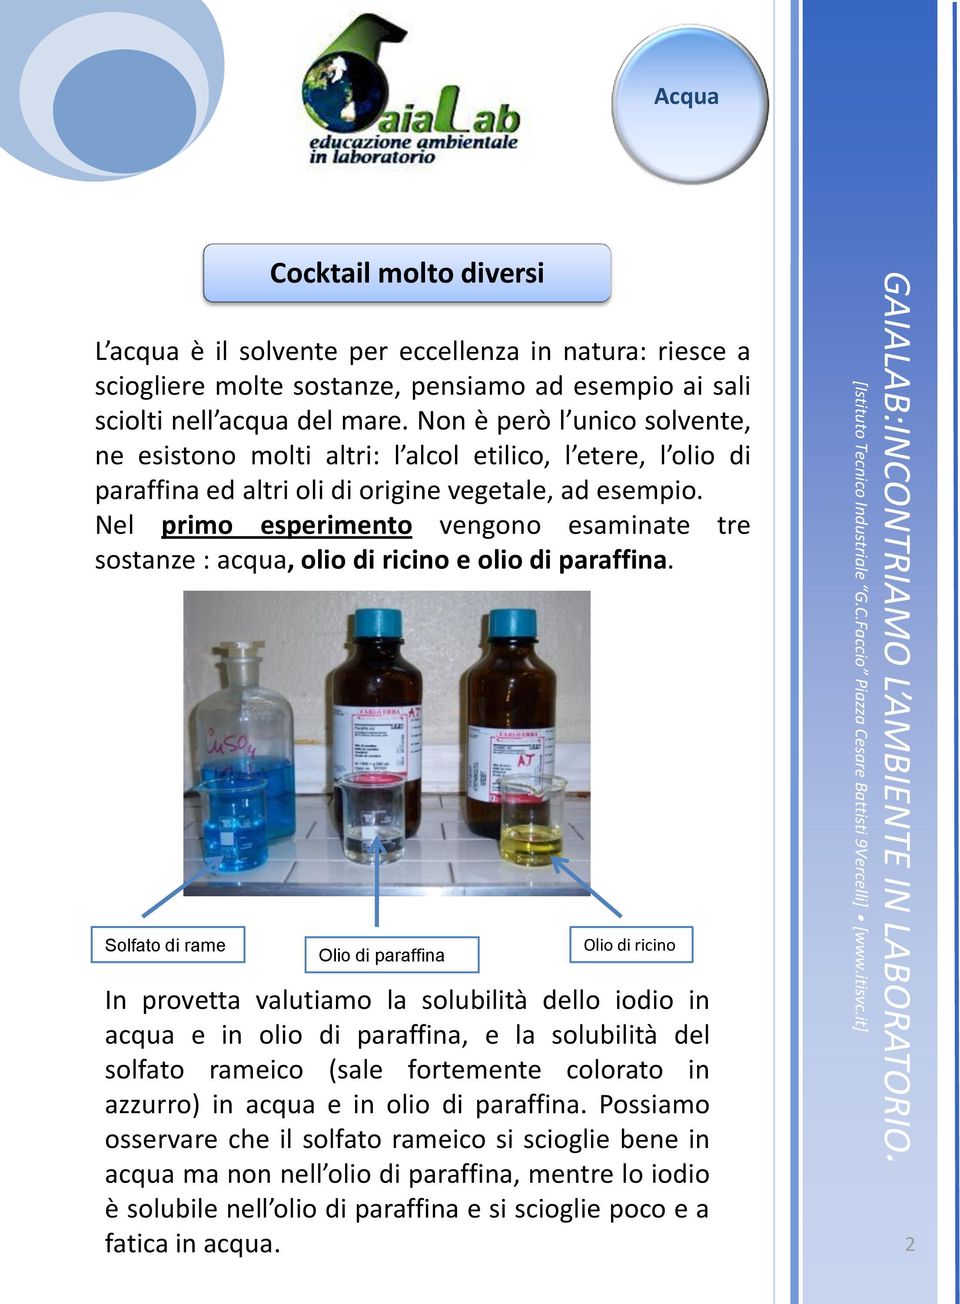 Nel primo esperimento vengono esaminate tre sostanze : acqua, olio di ricino e olio di paraffina.